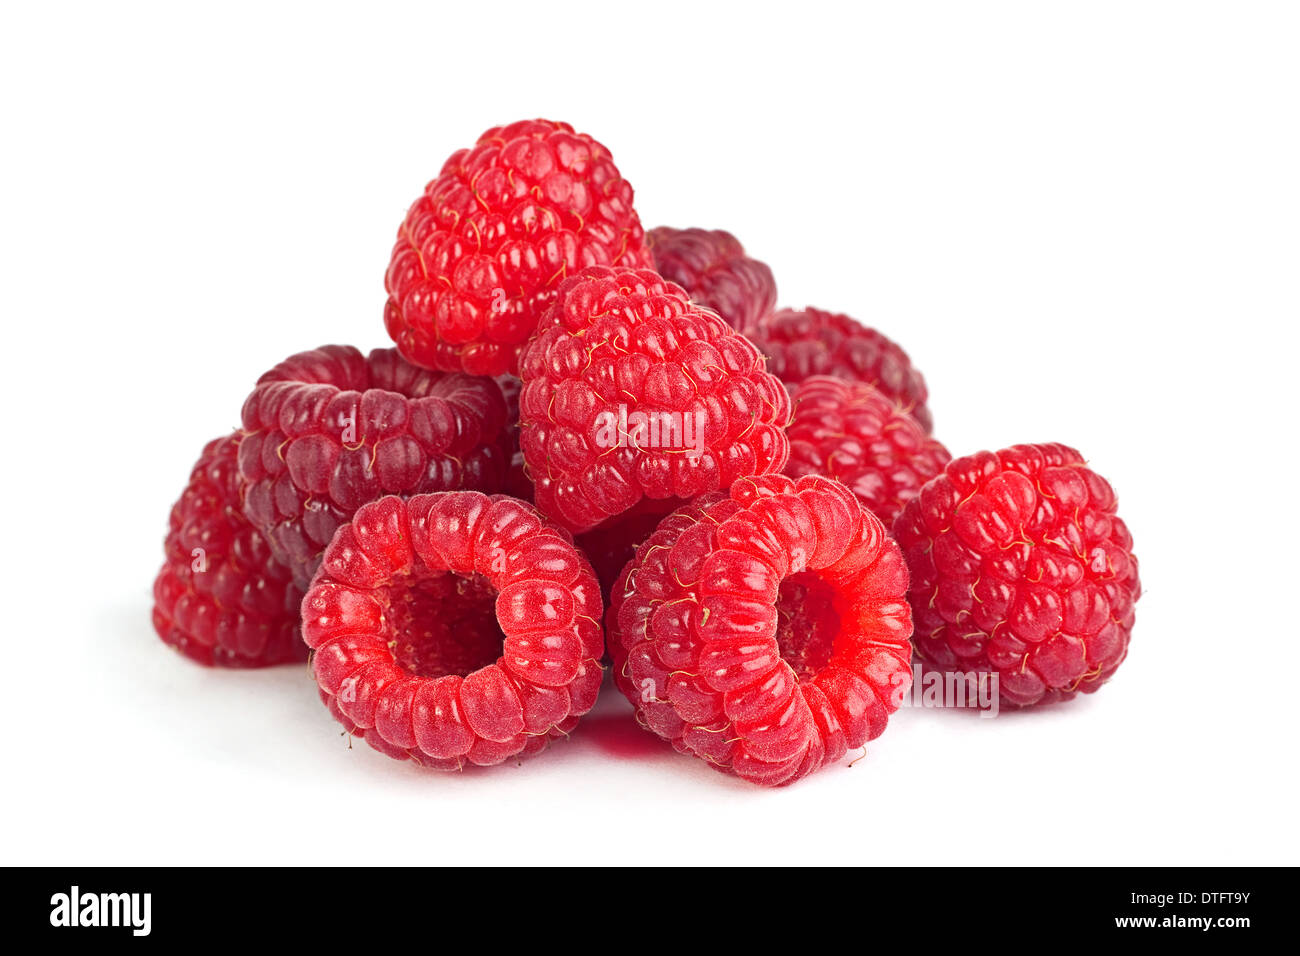 Raspberry ripe fruit isolated on white background Stock Photo